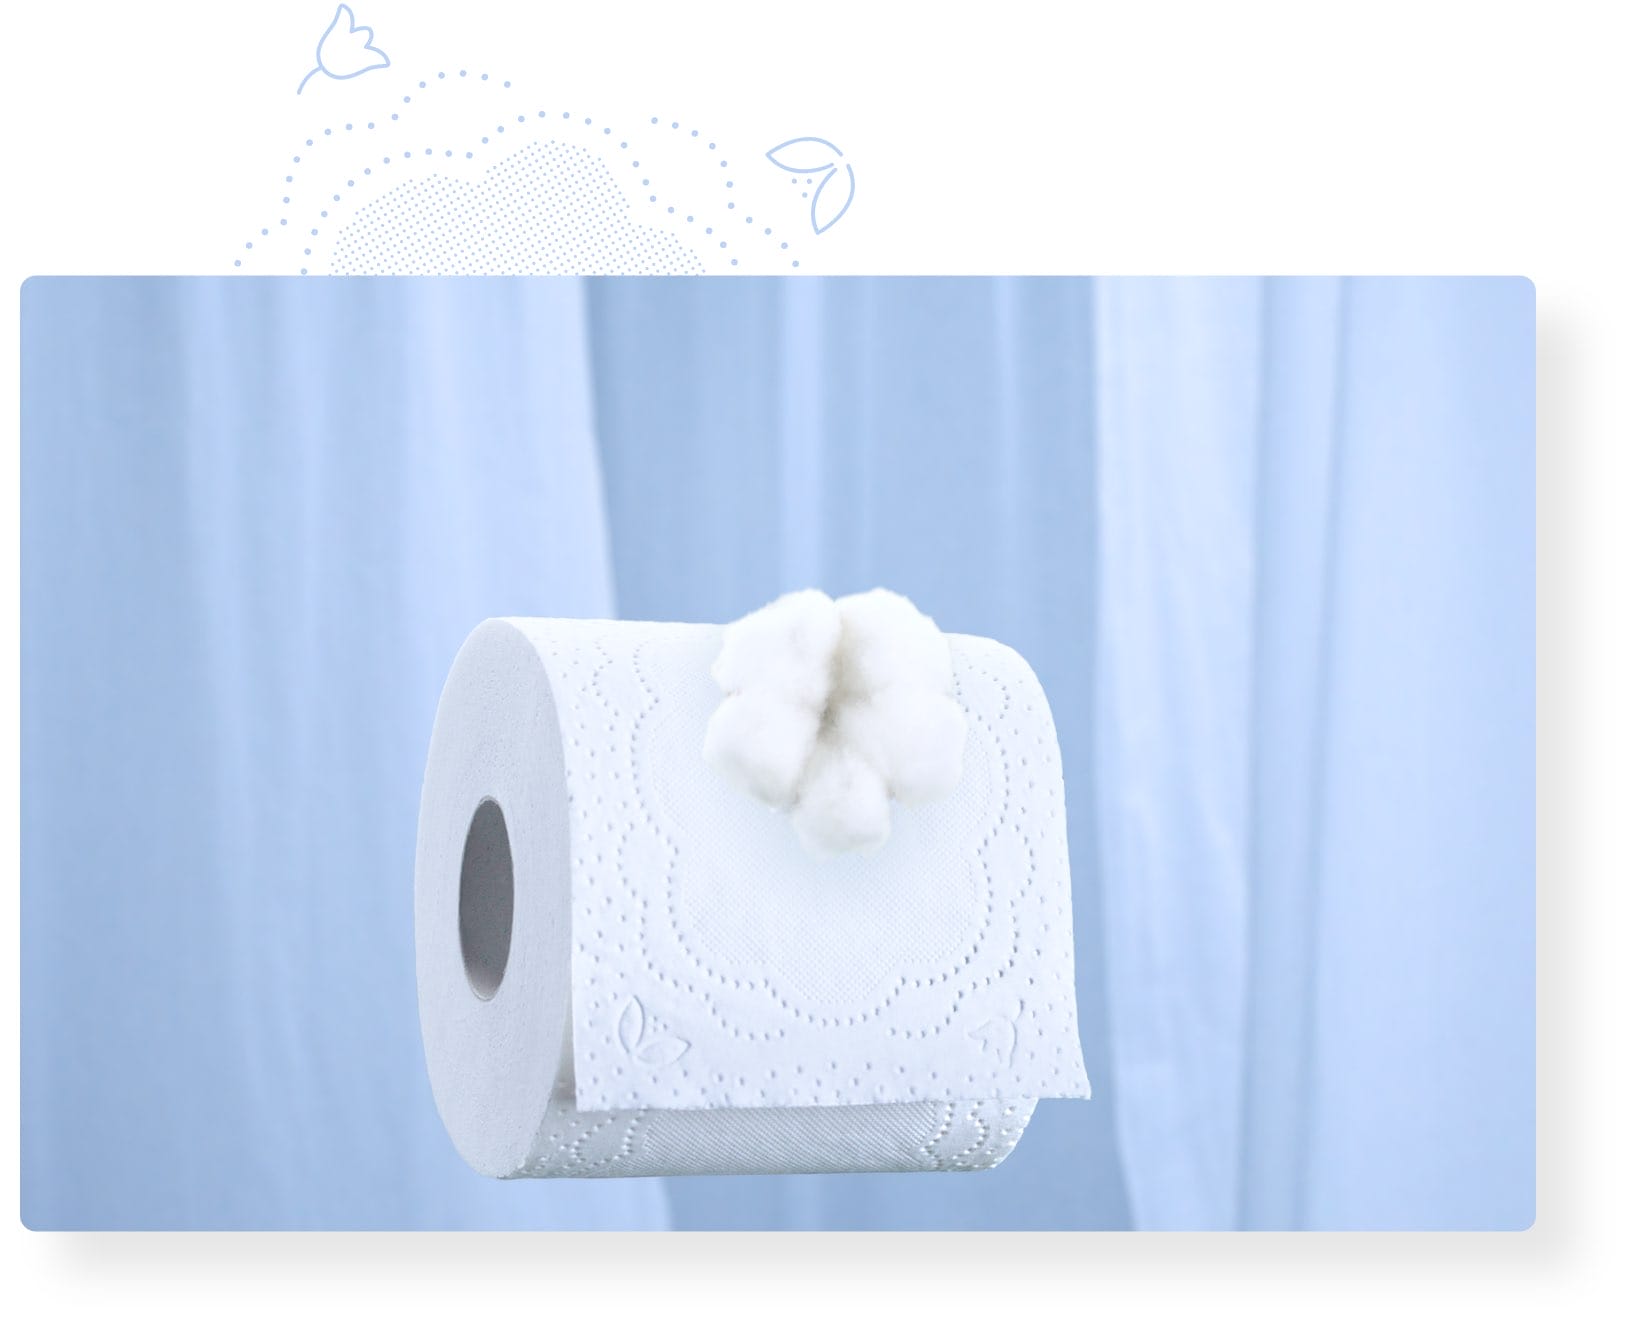 Foxy Cotton papier toilette